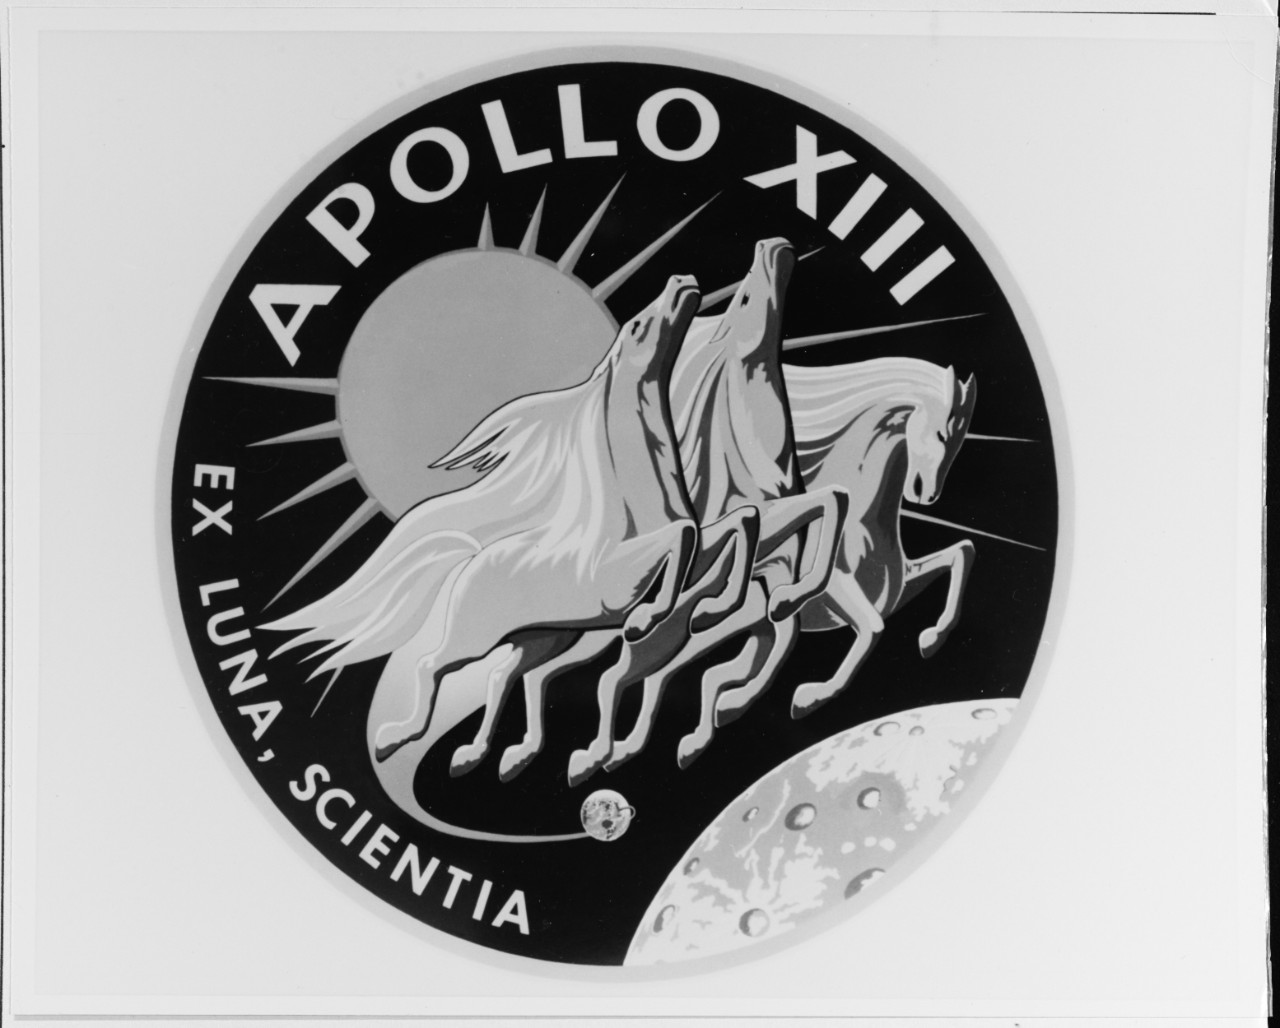 Apollo XIII Insignia